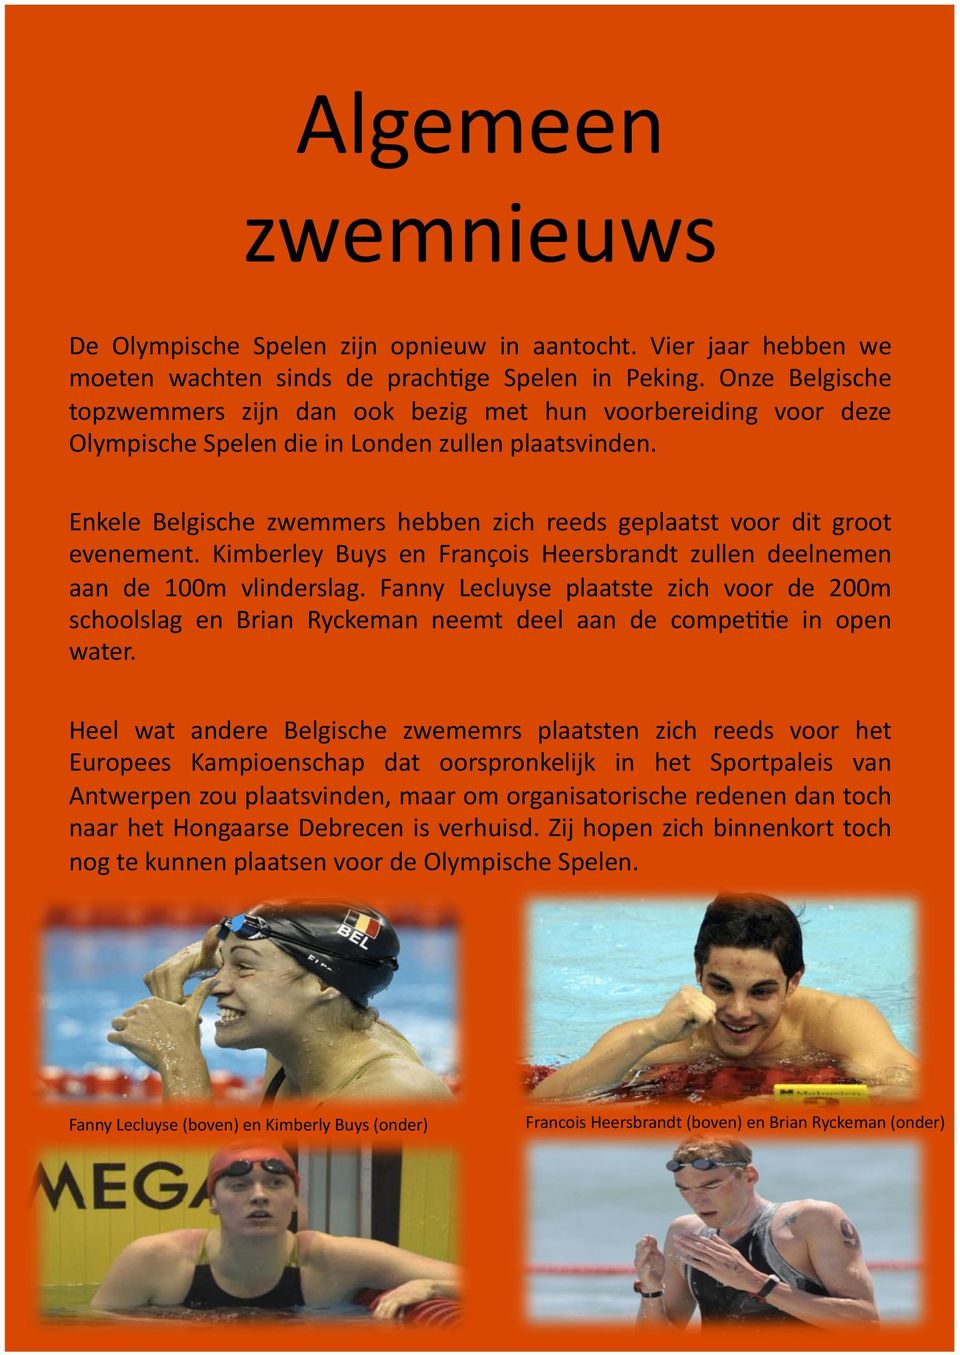 Enkele Belgische zwemmers hebben zich reeds geplaatst voor dit groot evenement. Kimberley Buys en François Heersbrandt zullen deelnemen aan de 100m vlinderslag.